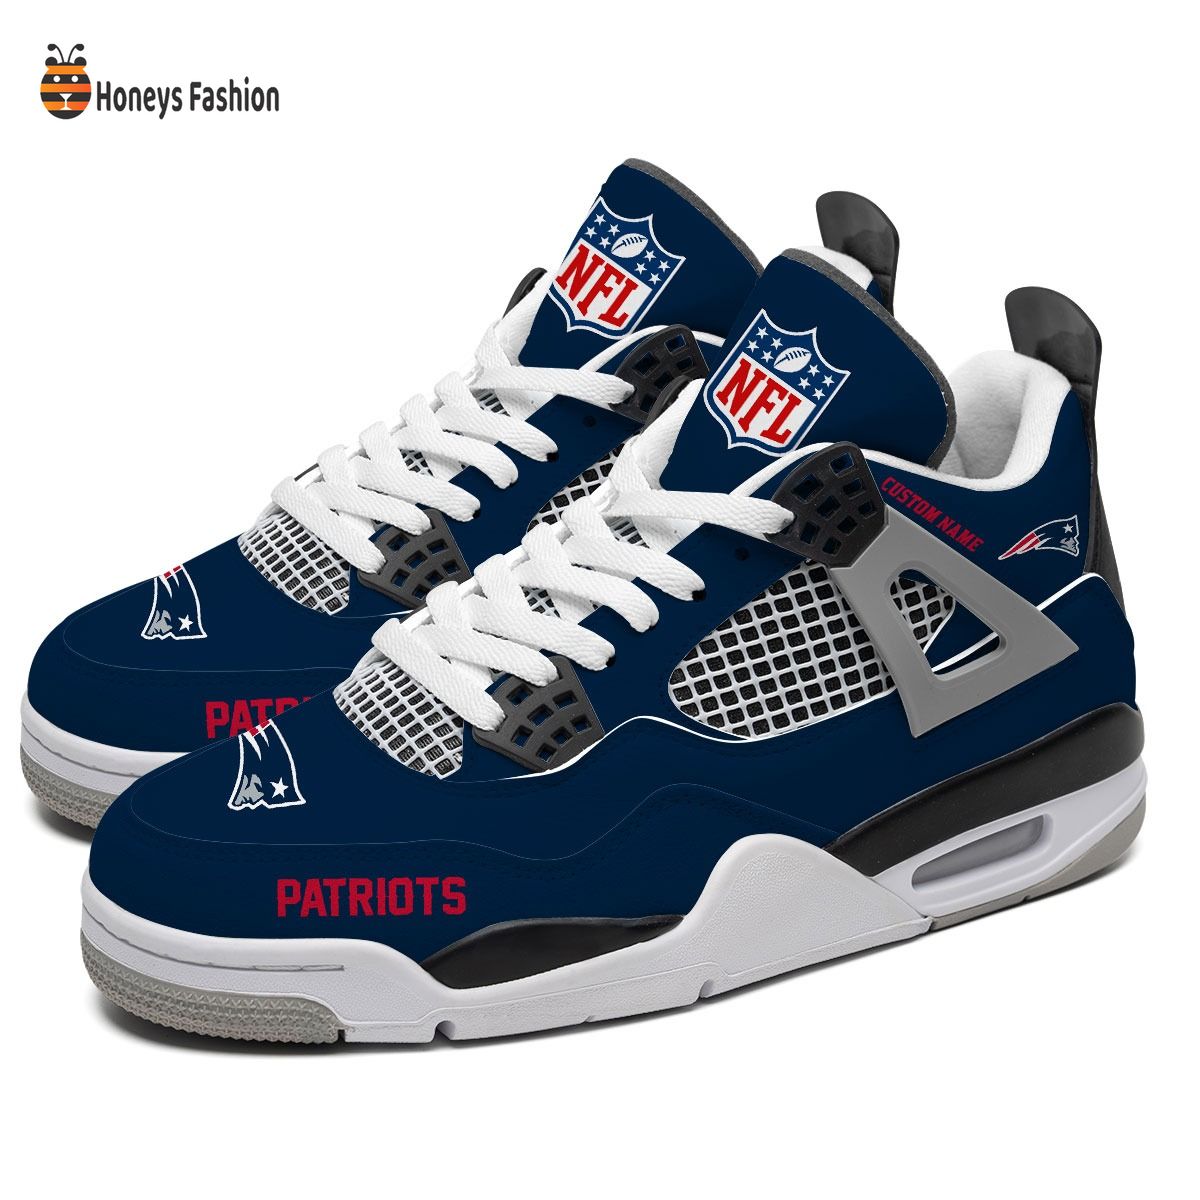 New England Patriots NFL Air Jordan 4 Shoes